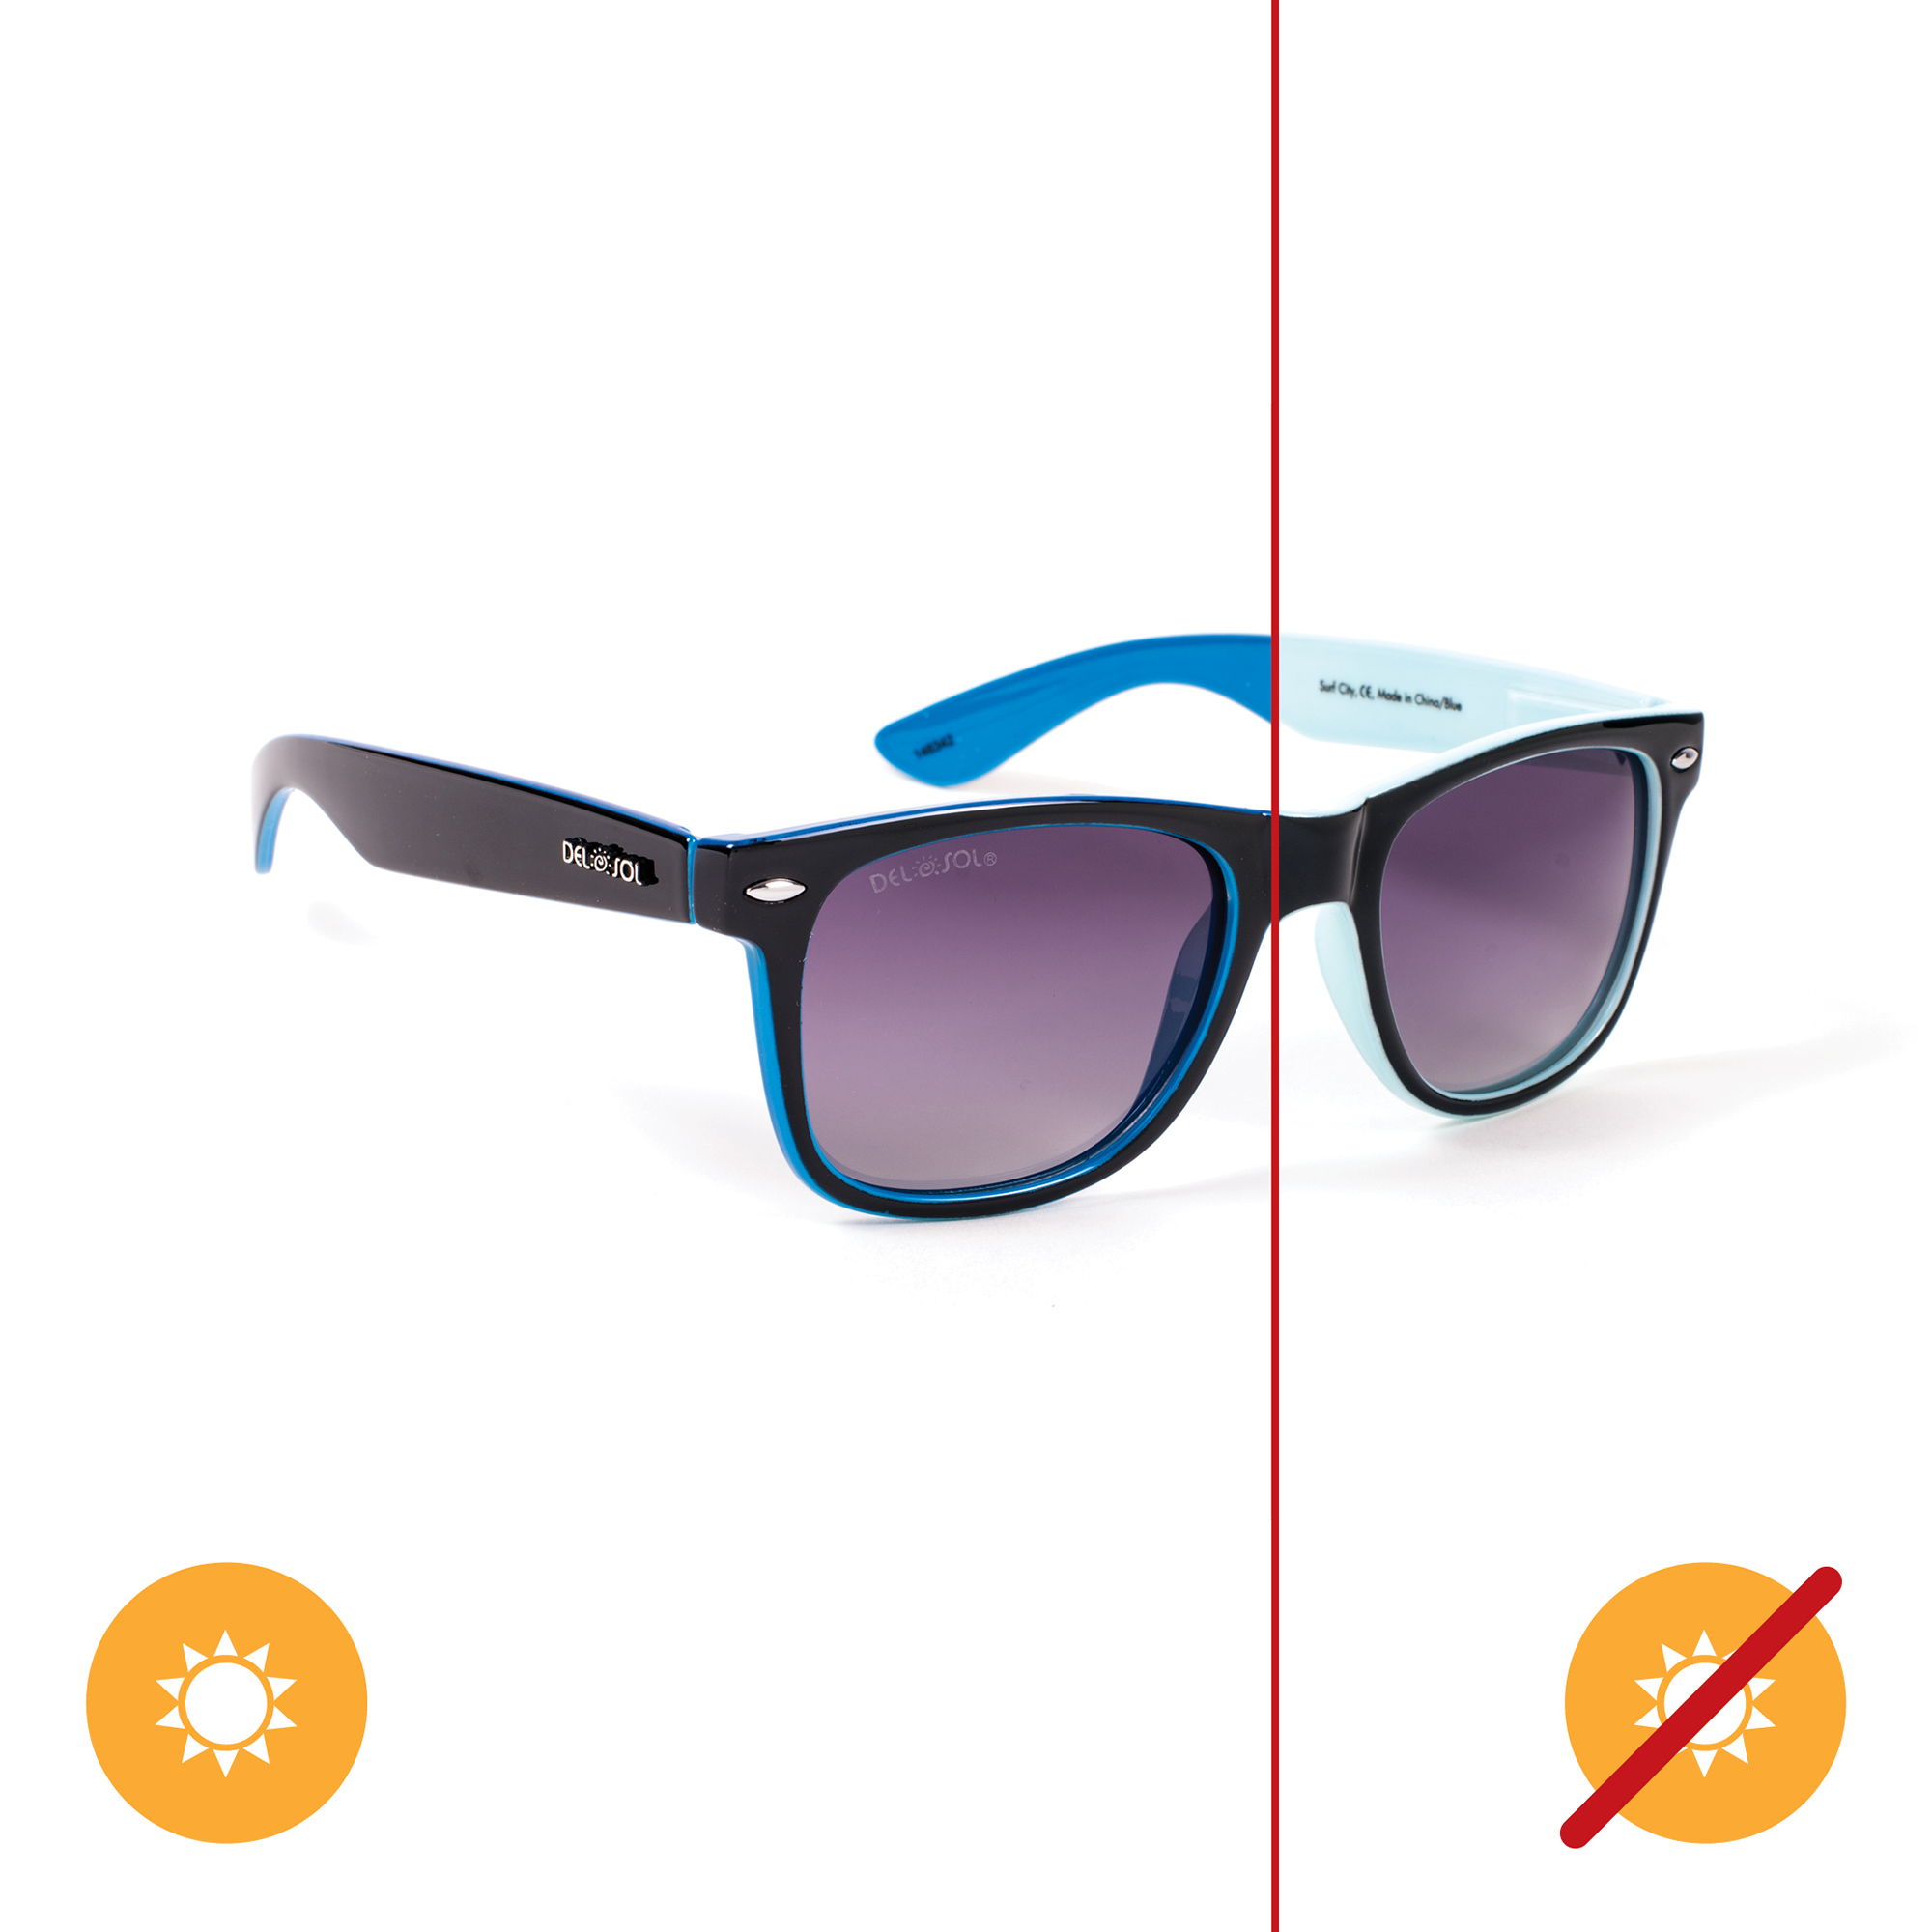 Del Sol Solize Surf City - Light Blue-Blue for Unisex 1 Pc Sunglasses